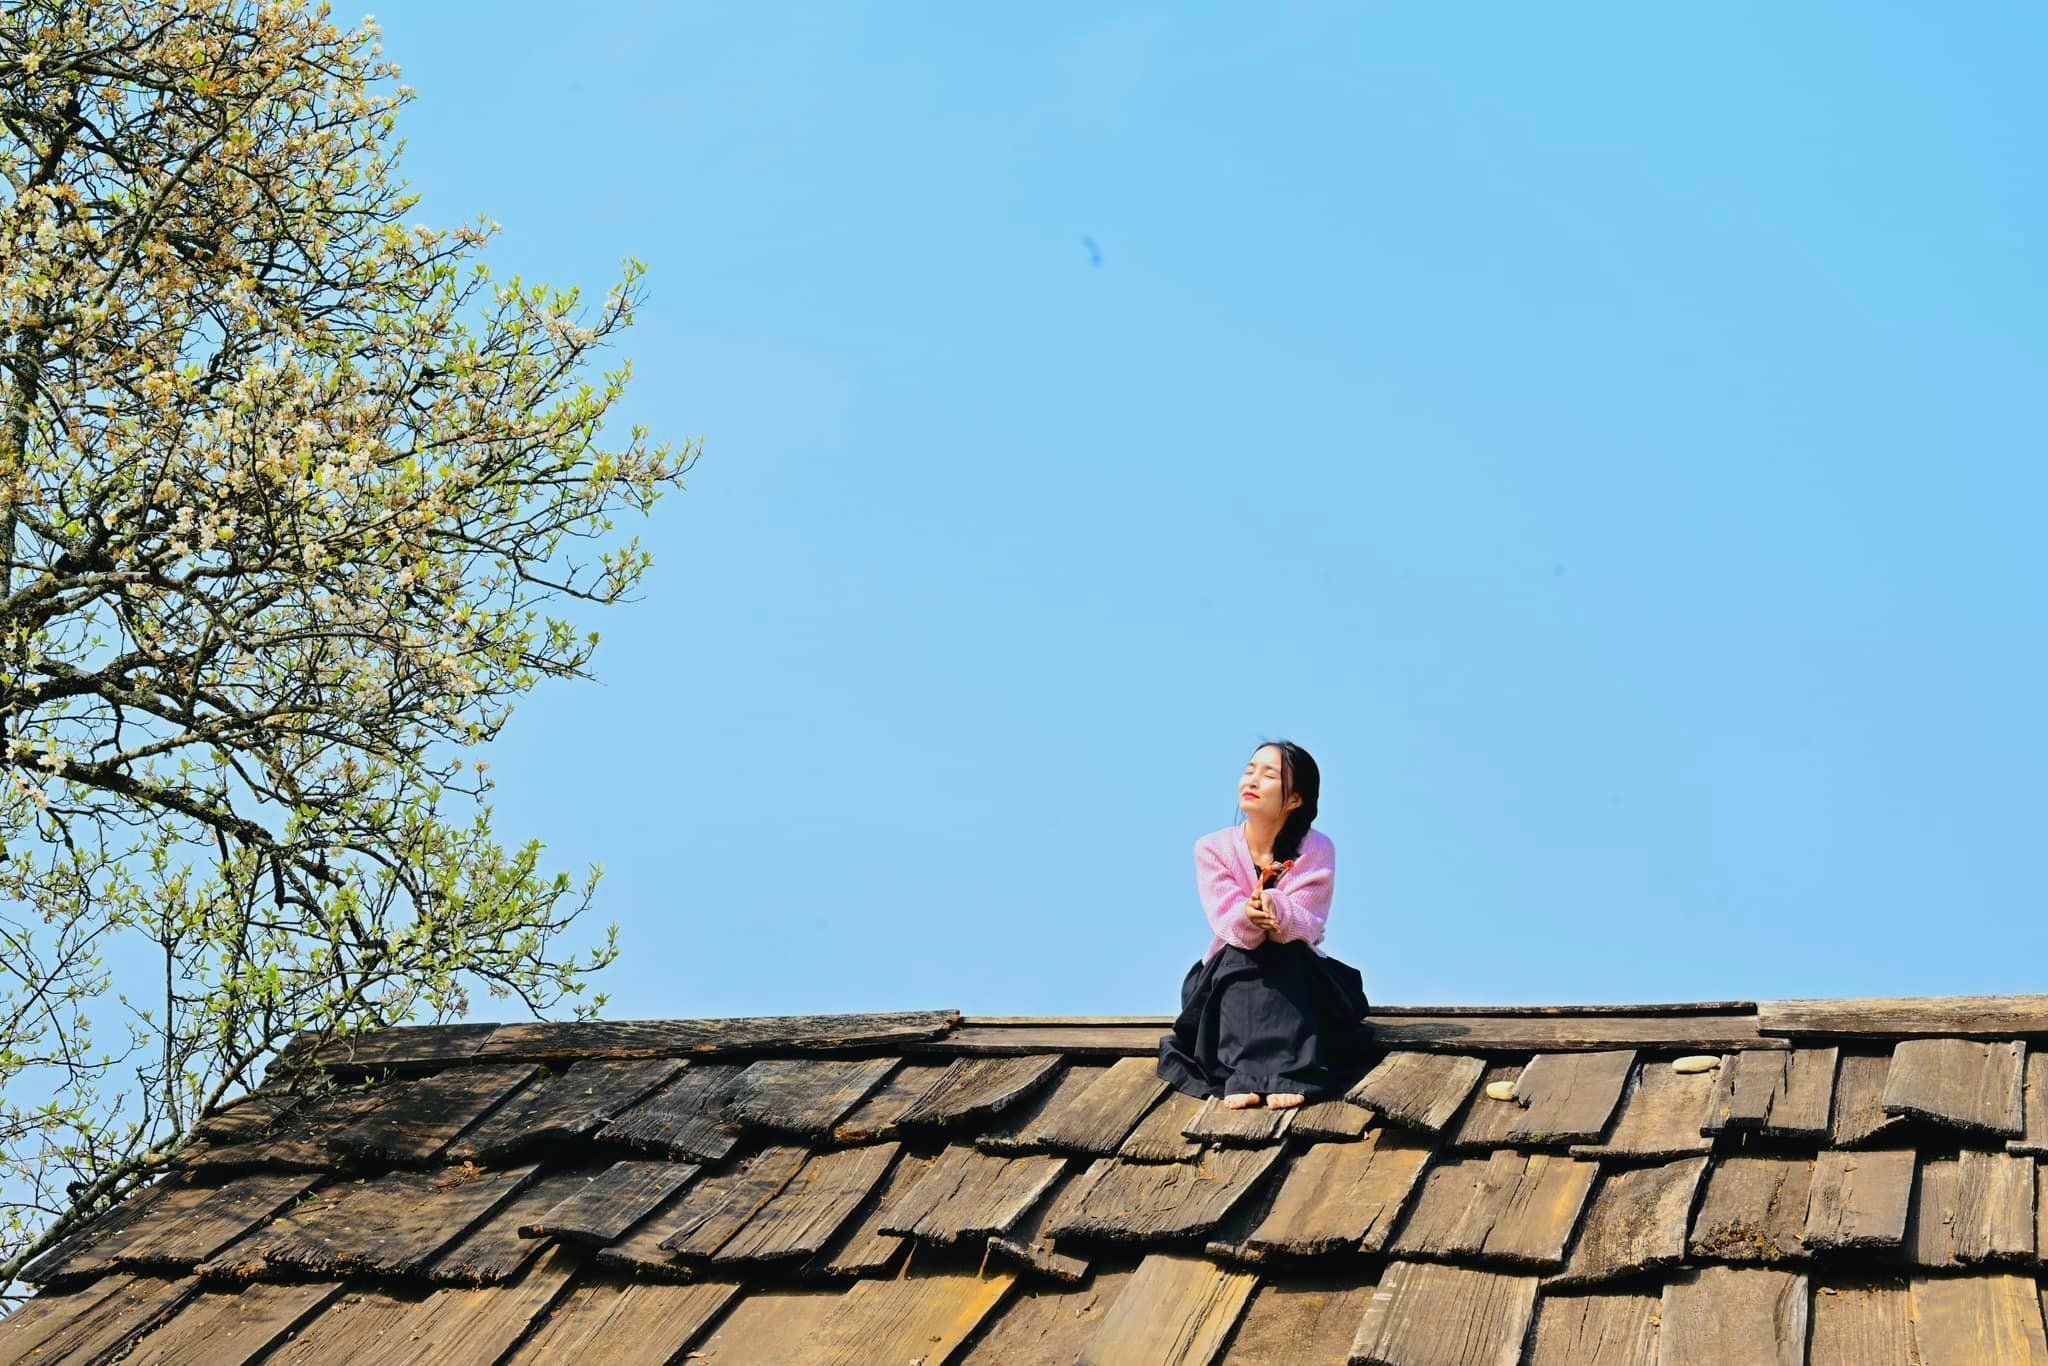 Du khách leo mái nhà để chụp ảnh cùng hoa sơn tra - 4